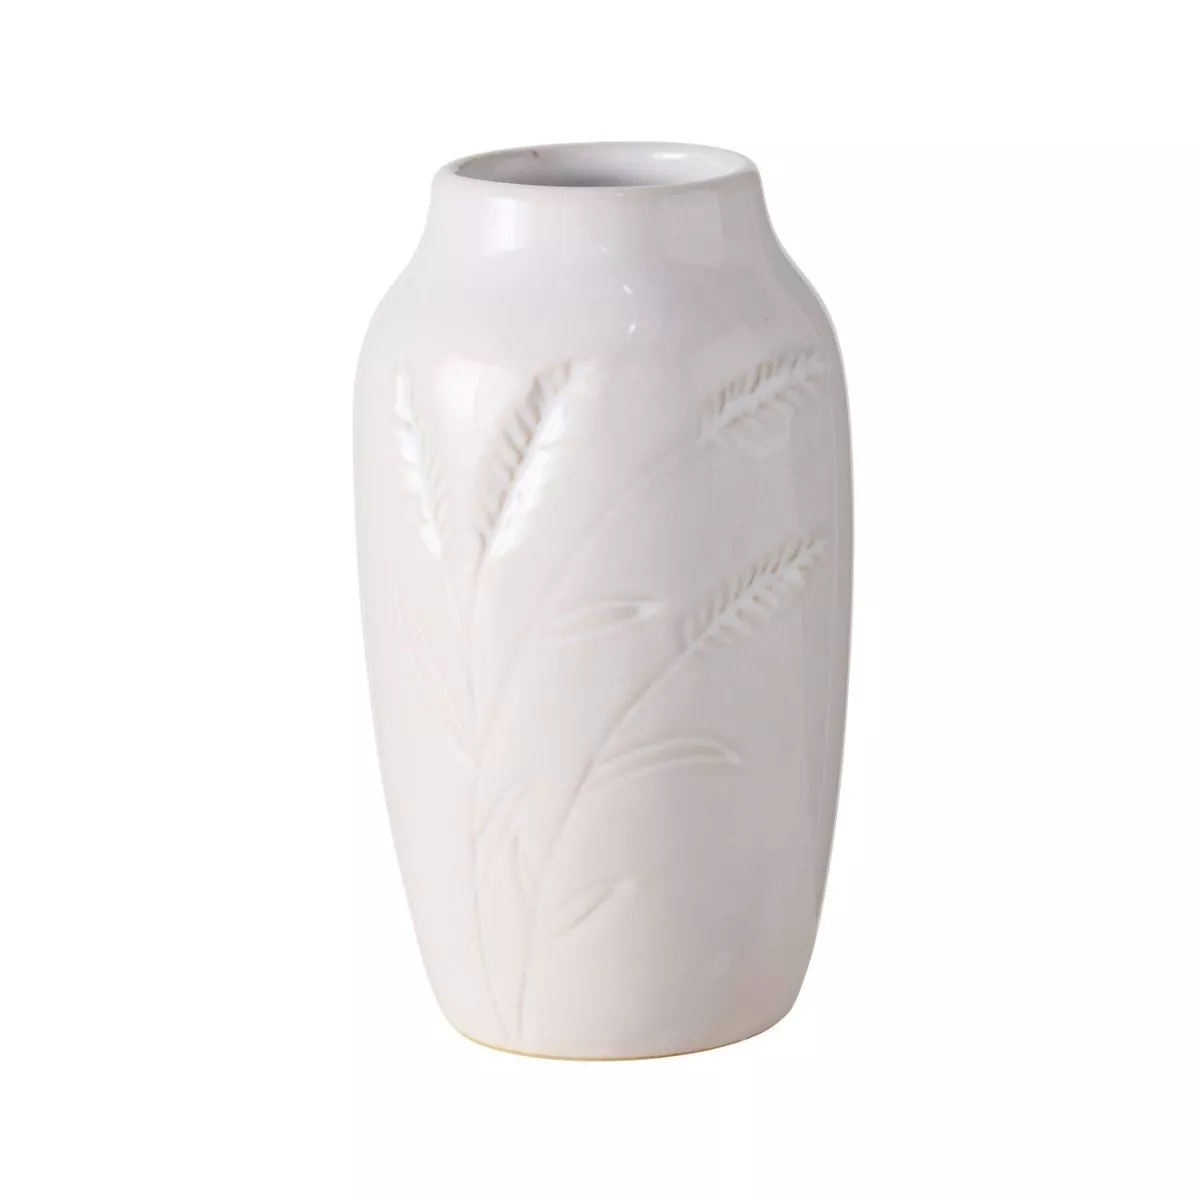 Vaza alba din ceramica 15 cm Jenna design spic Boltze 1